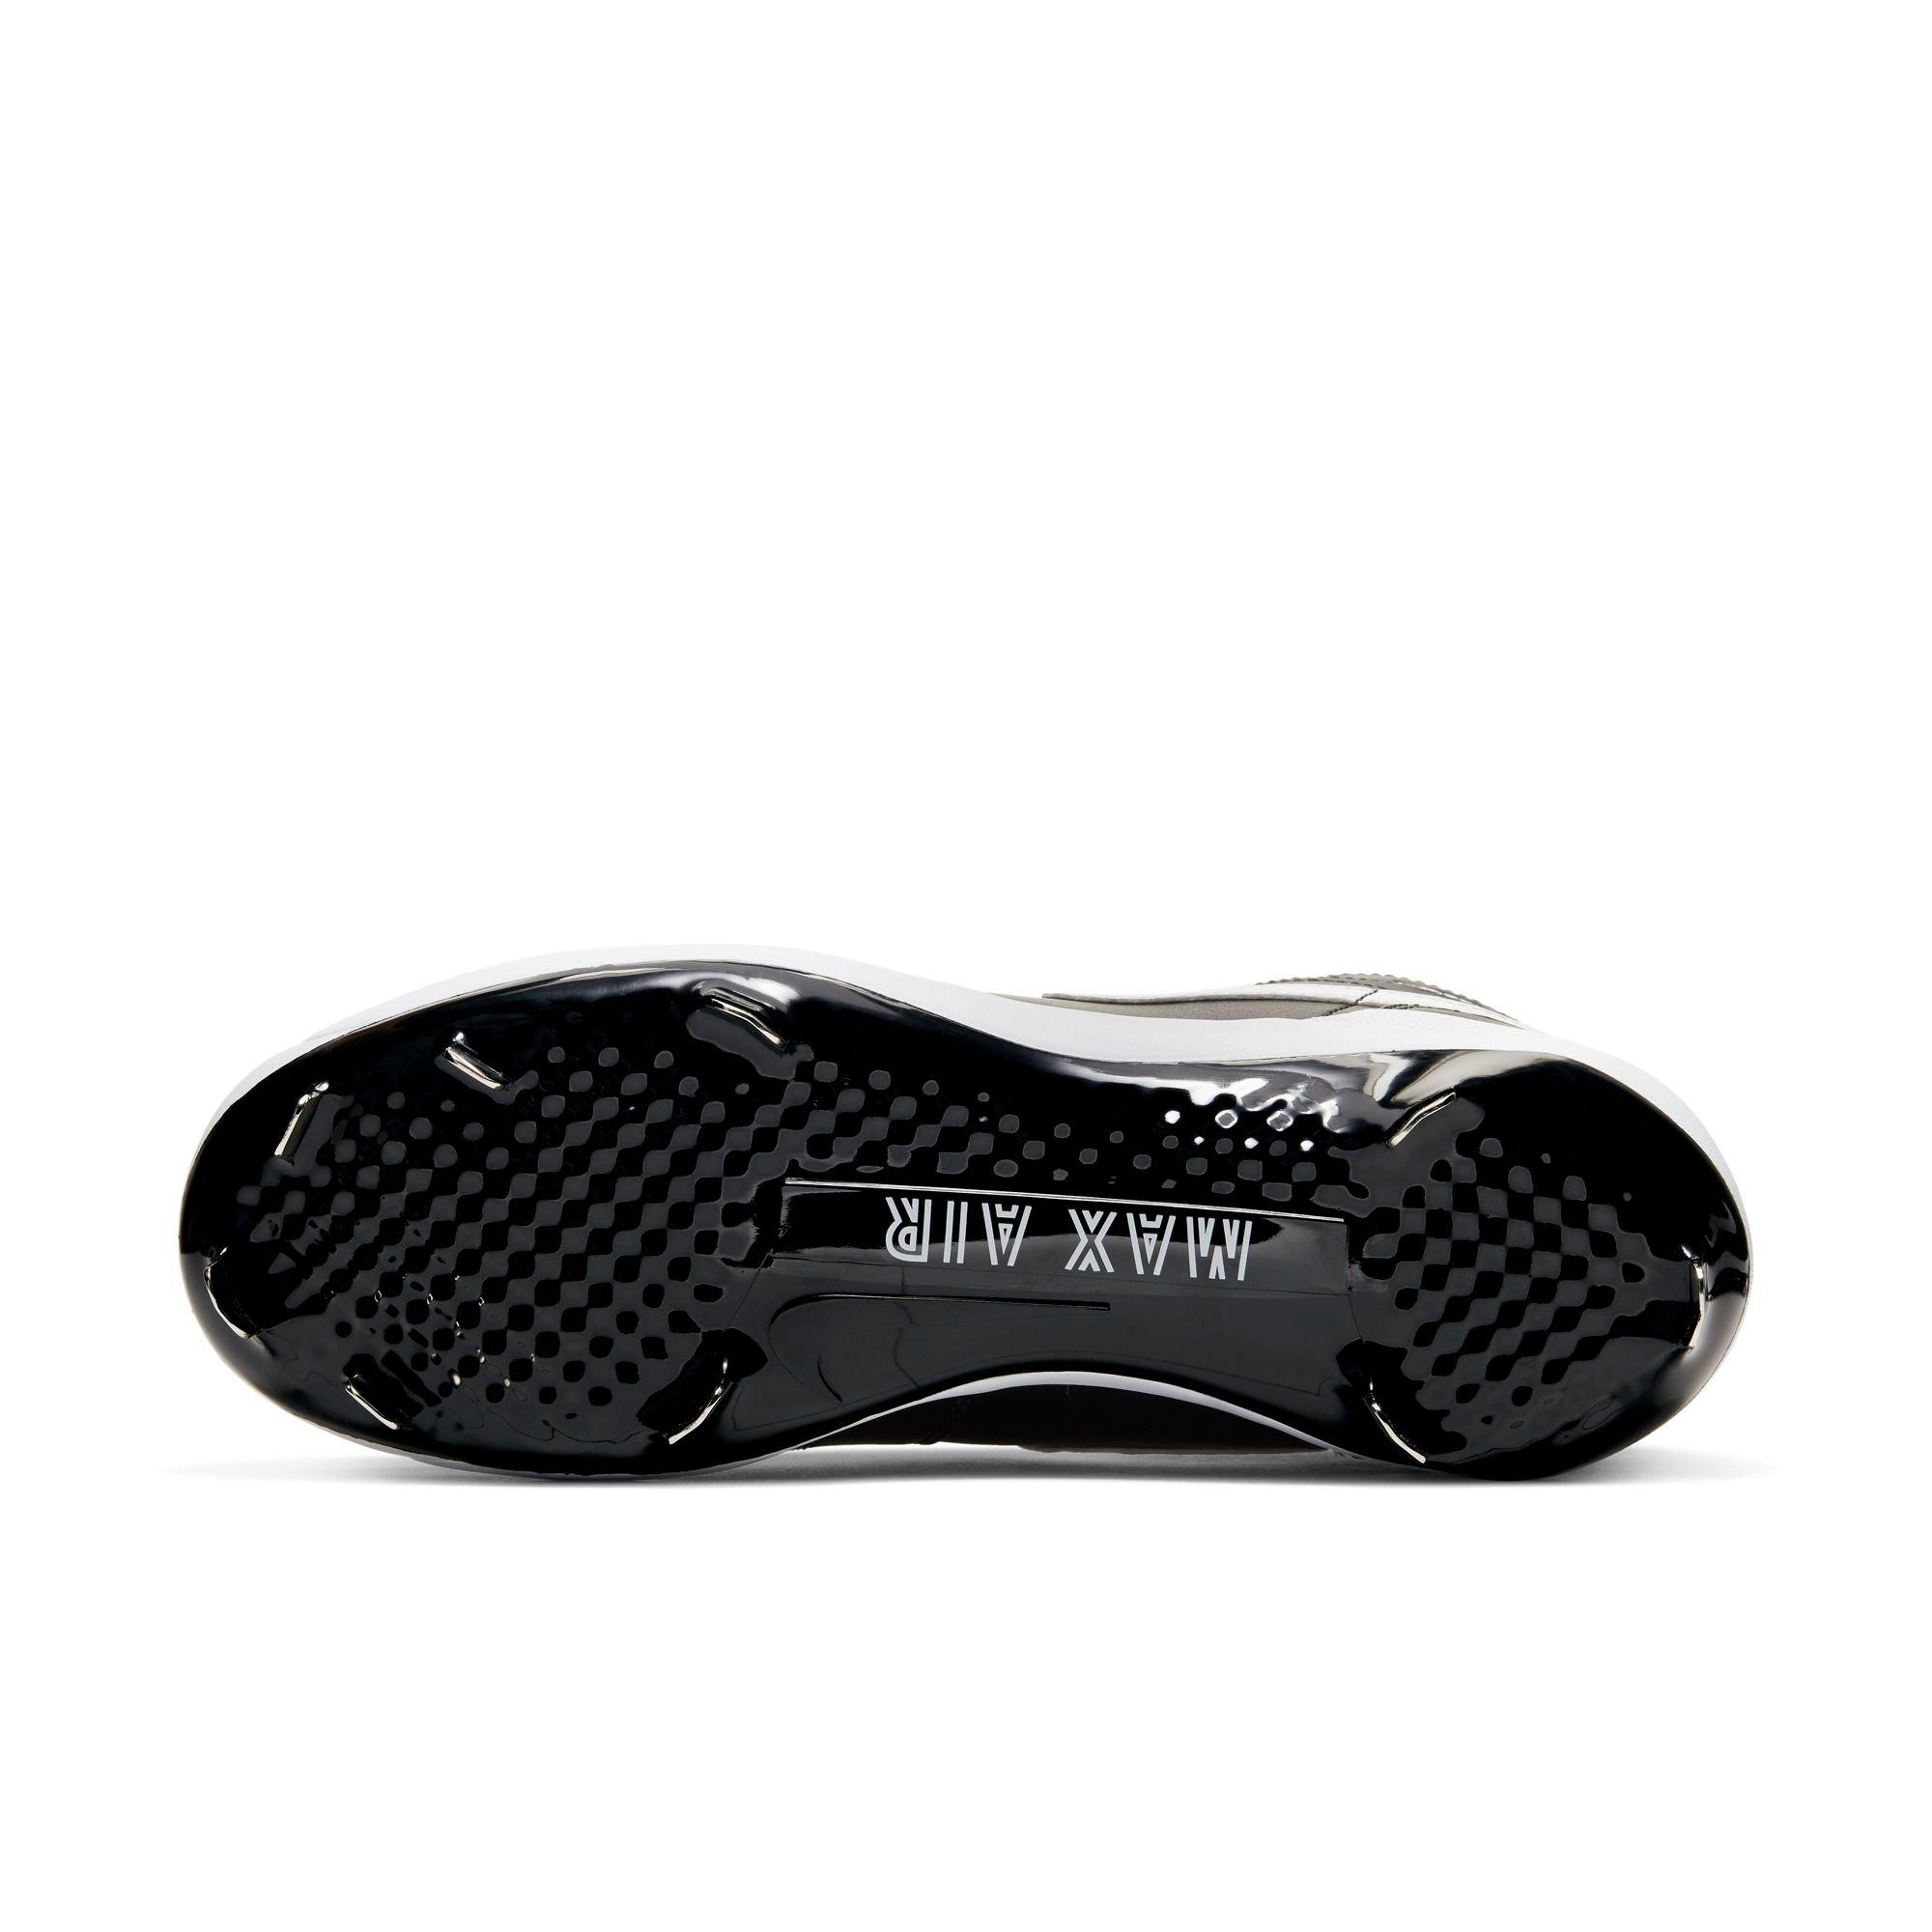 Nike Air Jordan 1 Retro Metal Baseball Cleats Black White AV5355-001  Men's